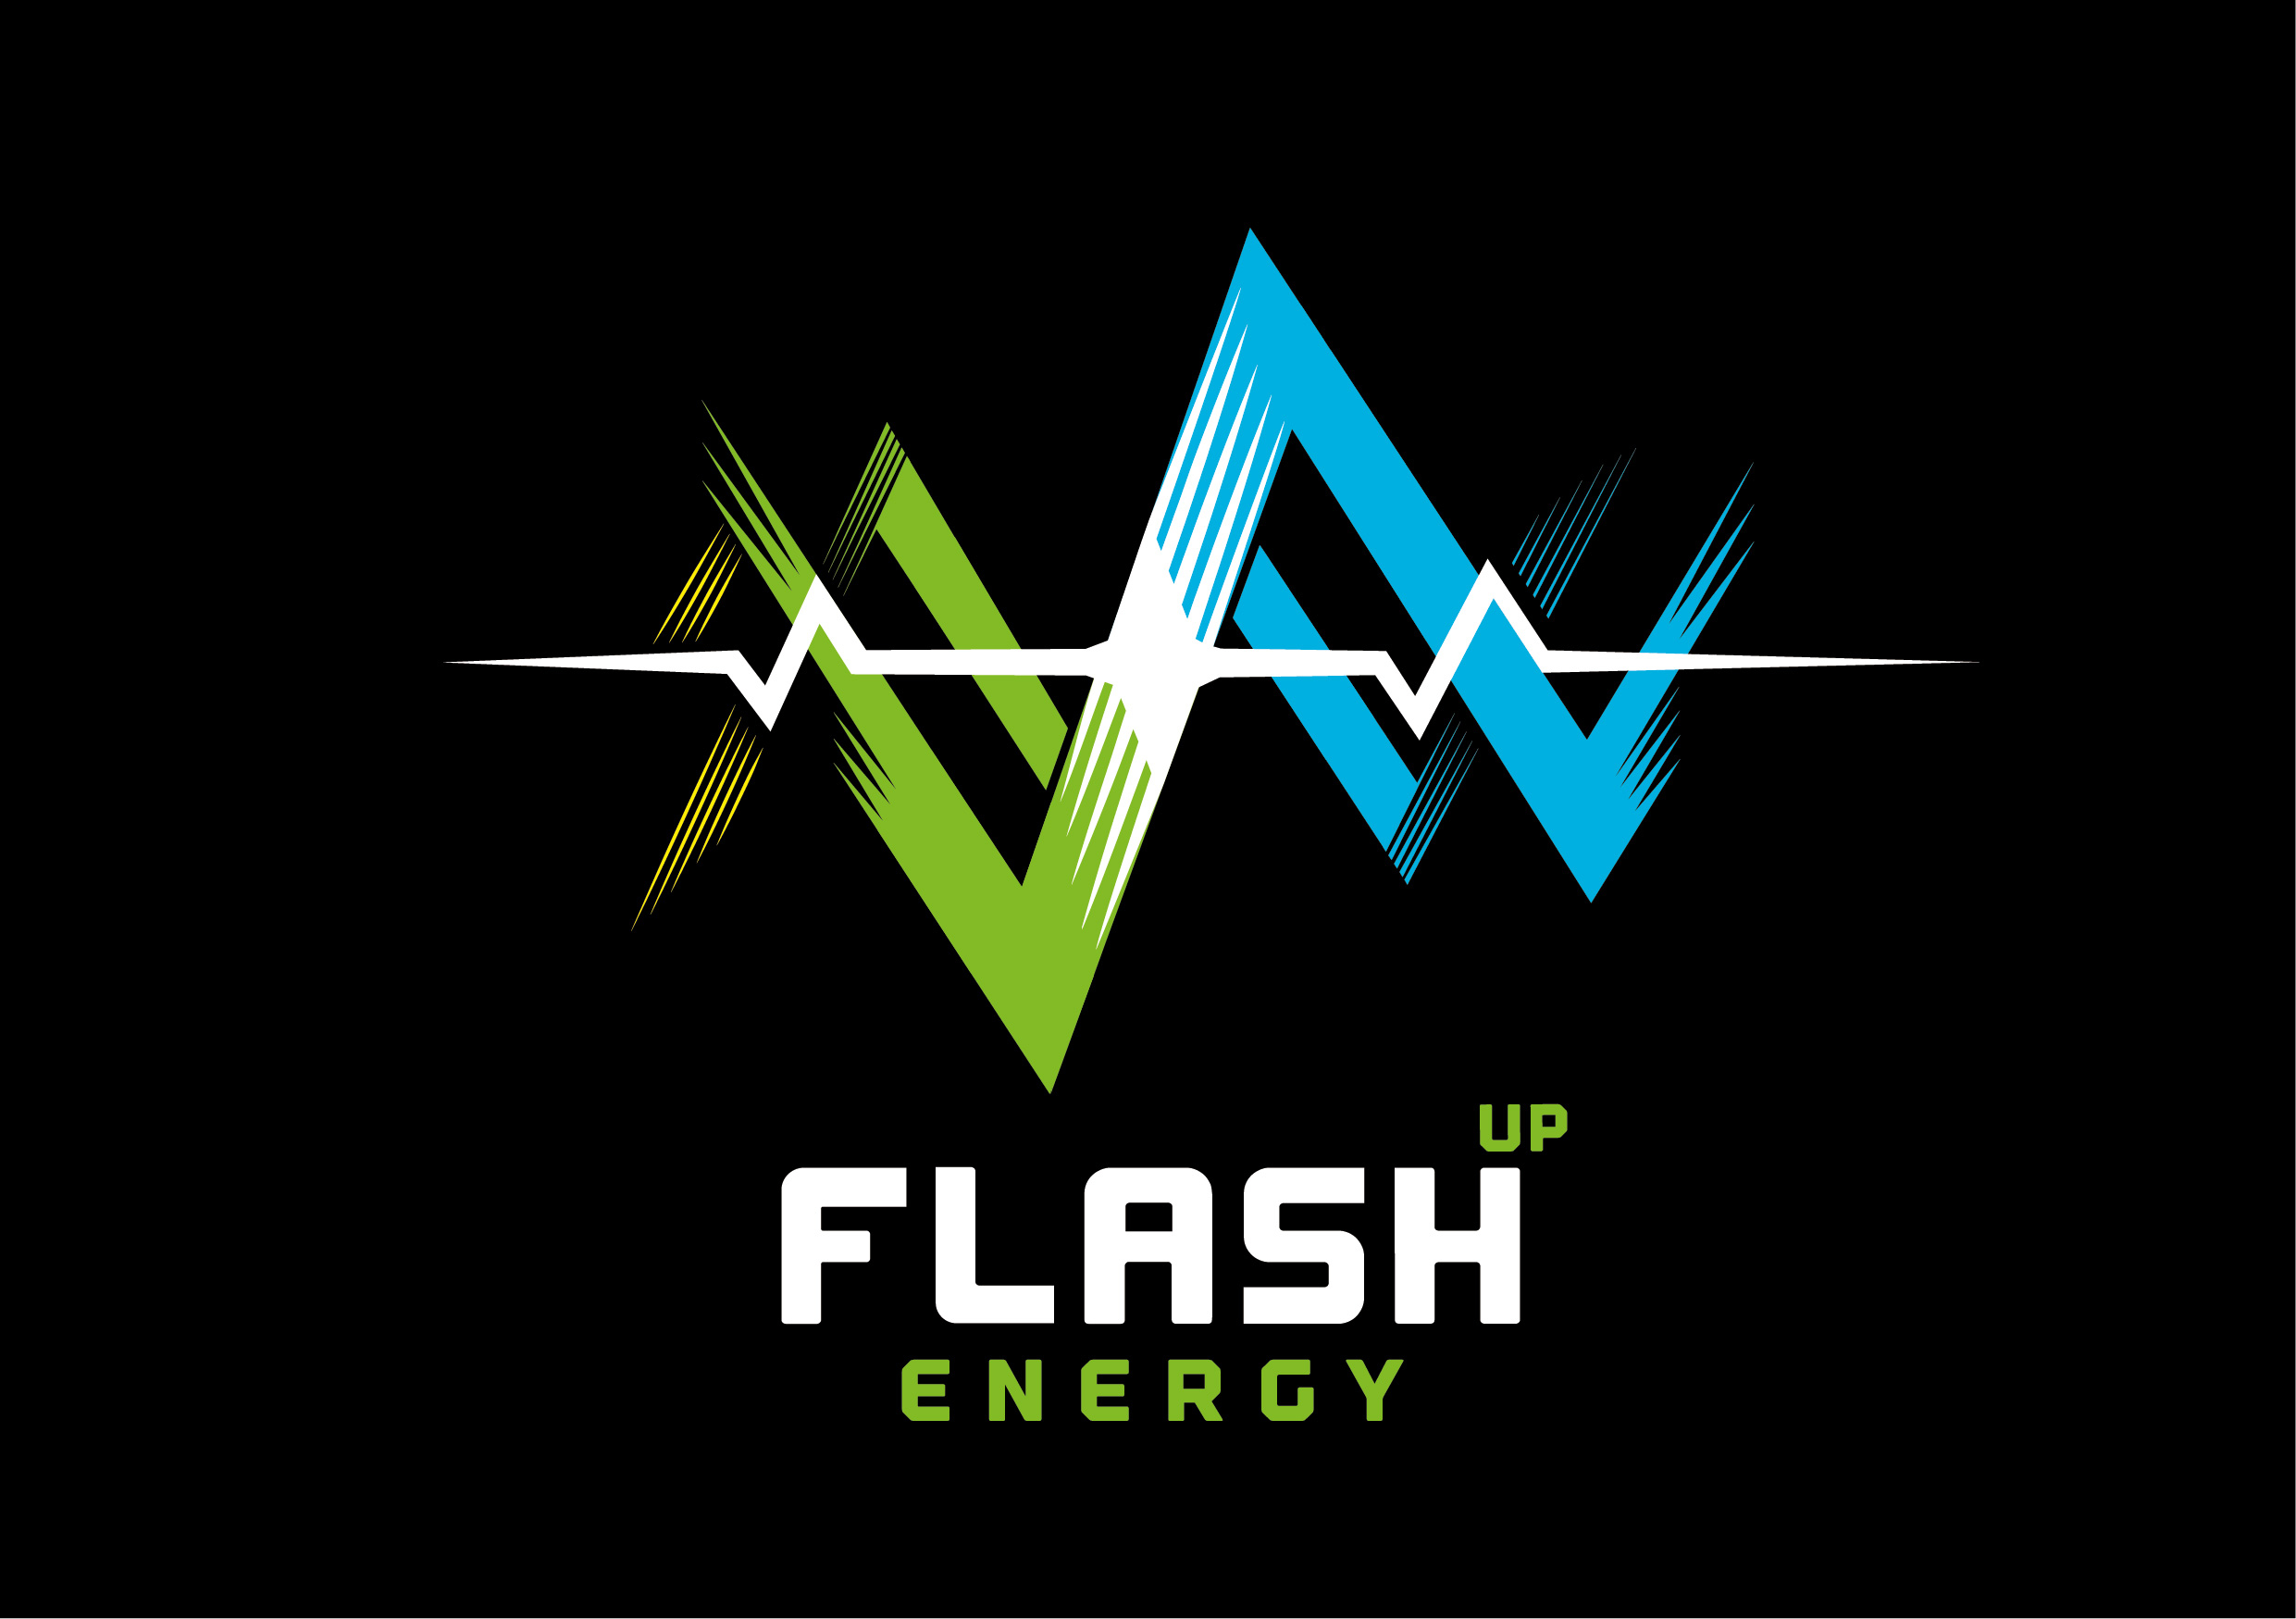 партнер турнира по сквошу Spb Cup 2020 - энергетический напиток Flash Up!